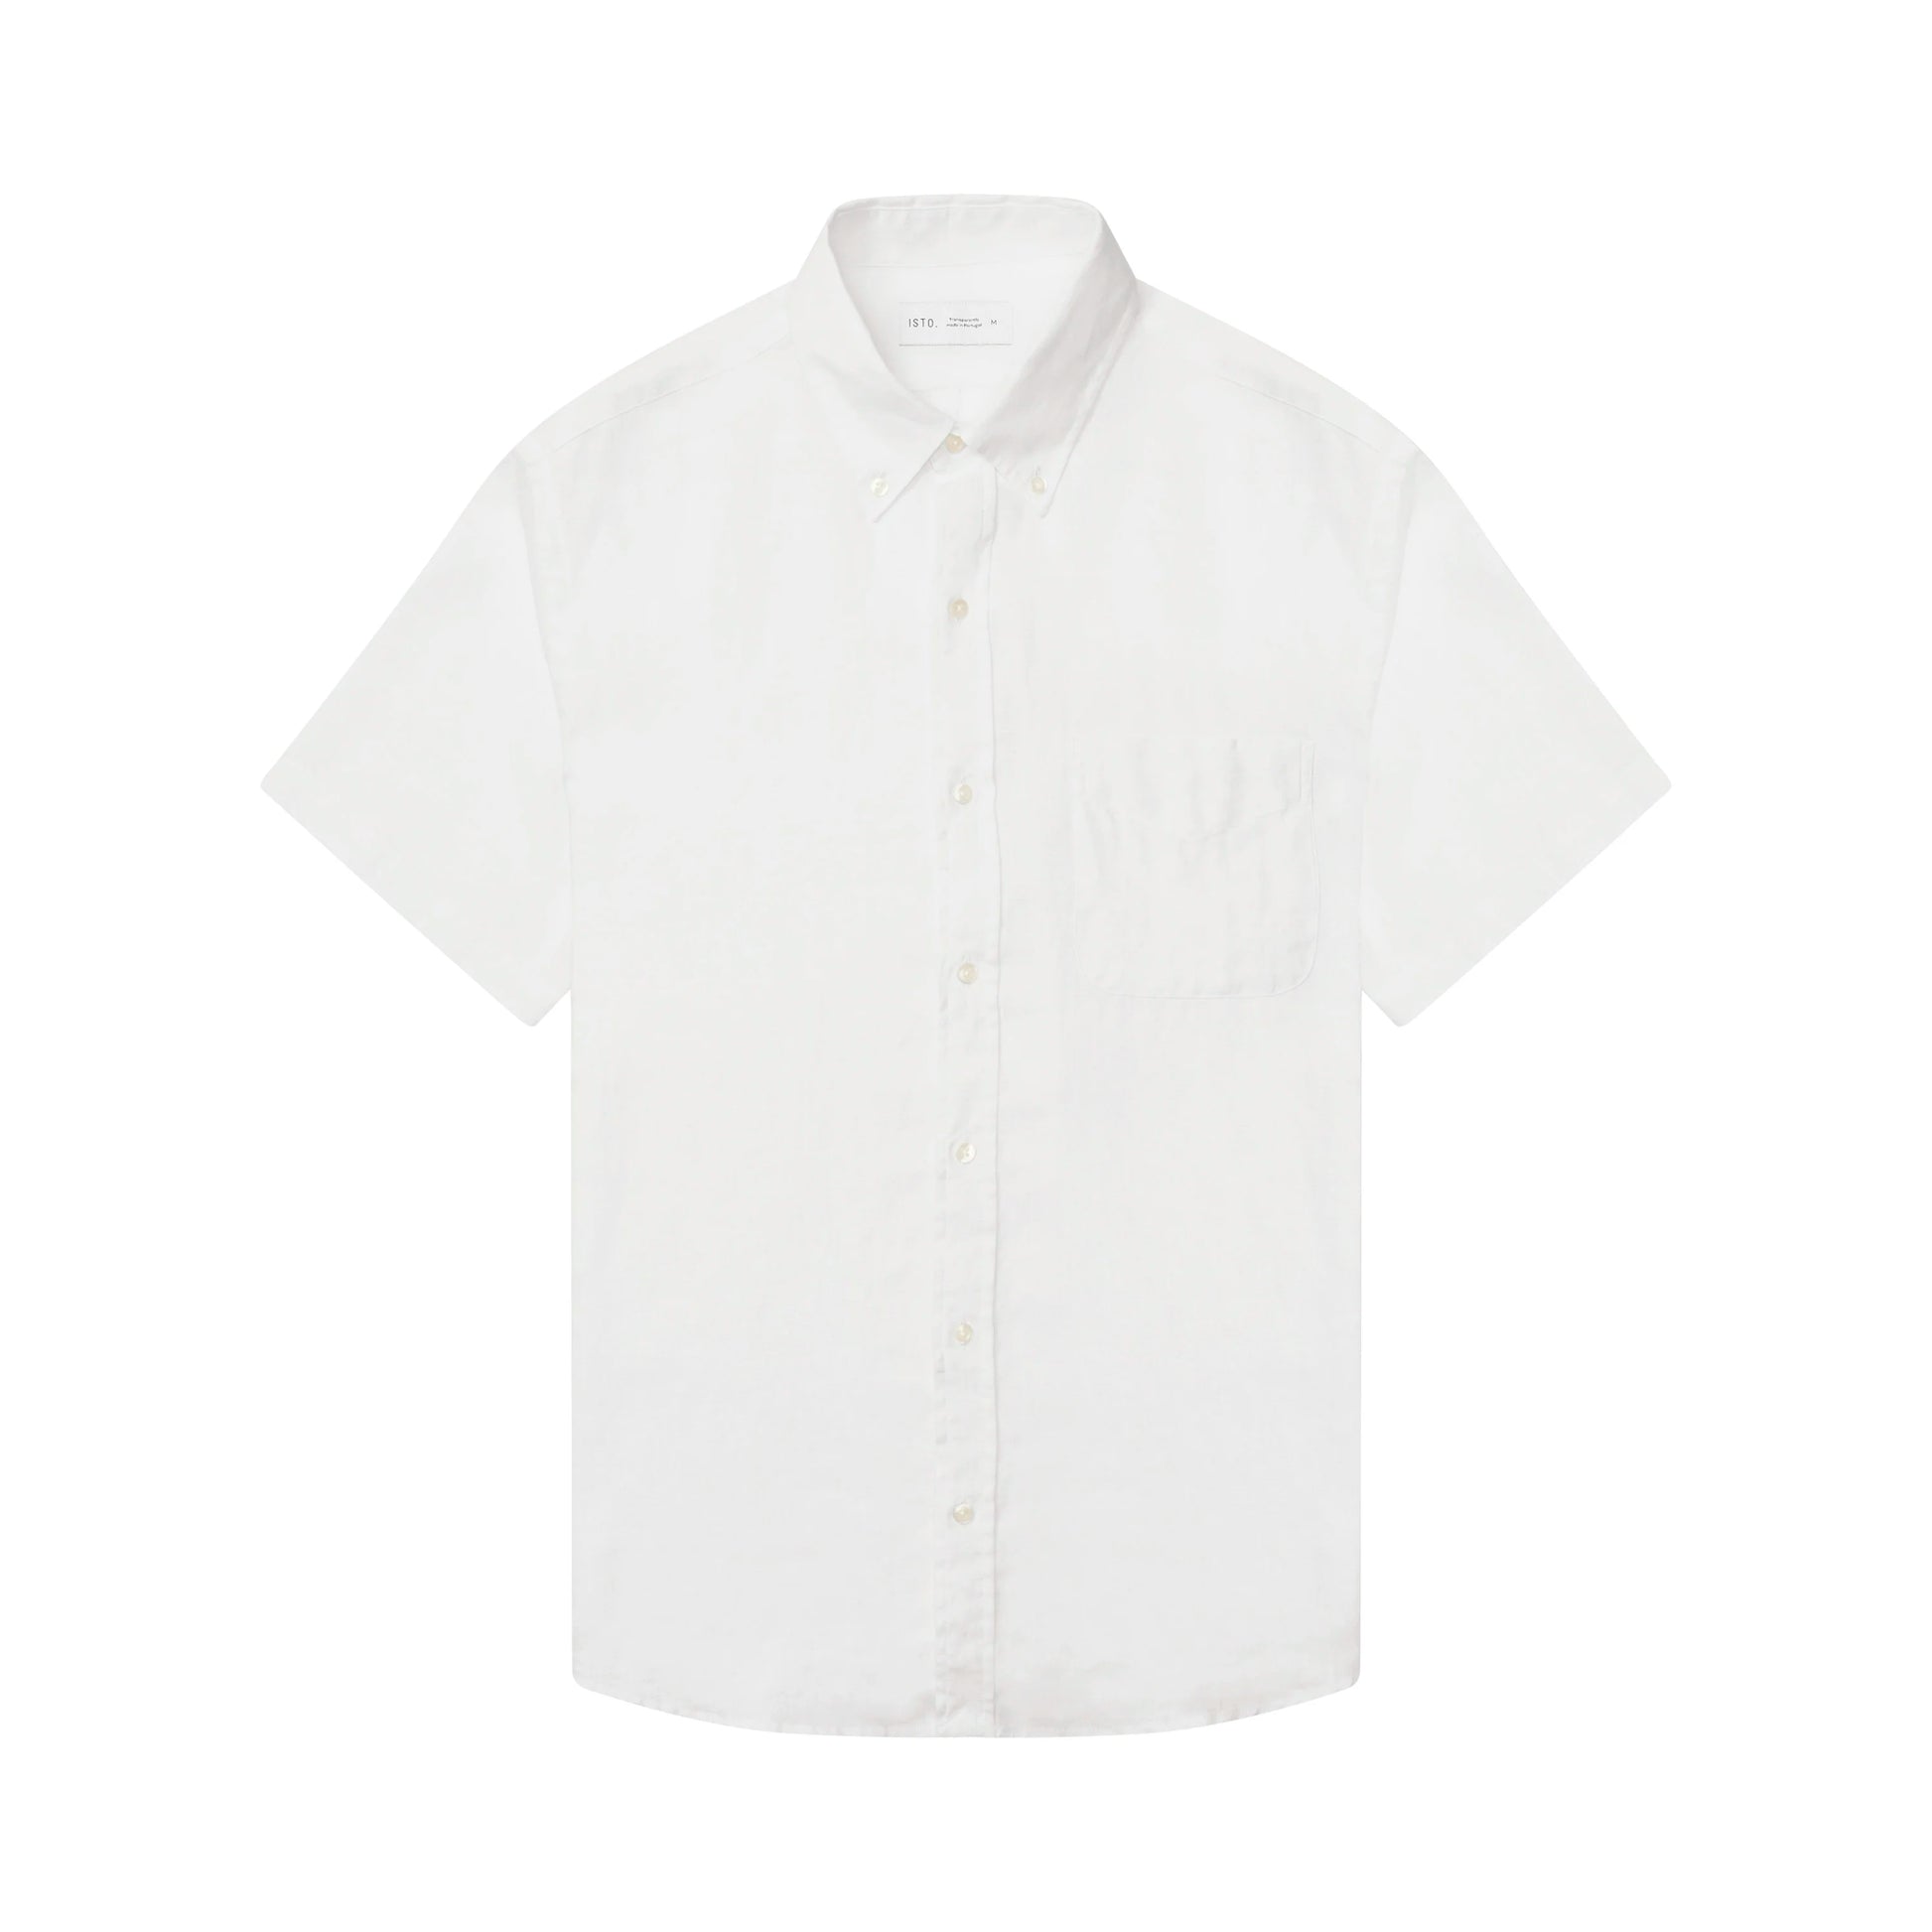 Prague Lemon Linen Shirt, Short Sleeve Cream Linen Shirt